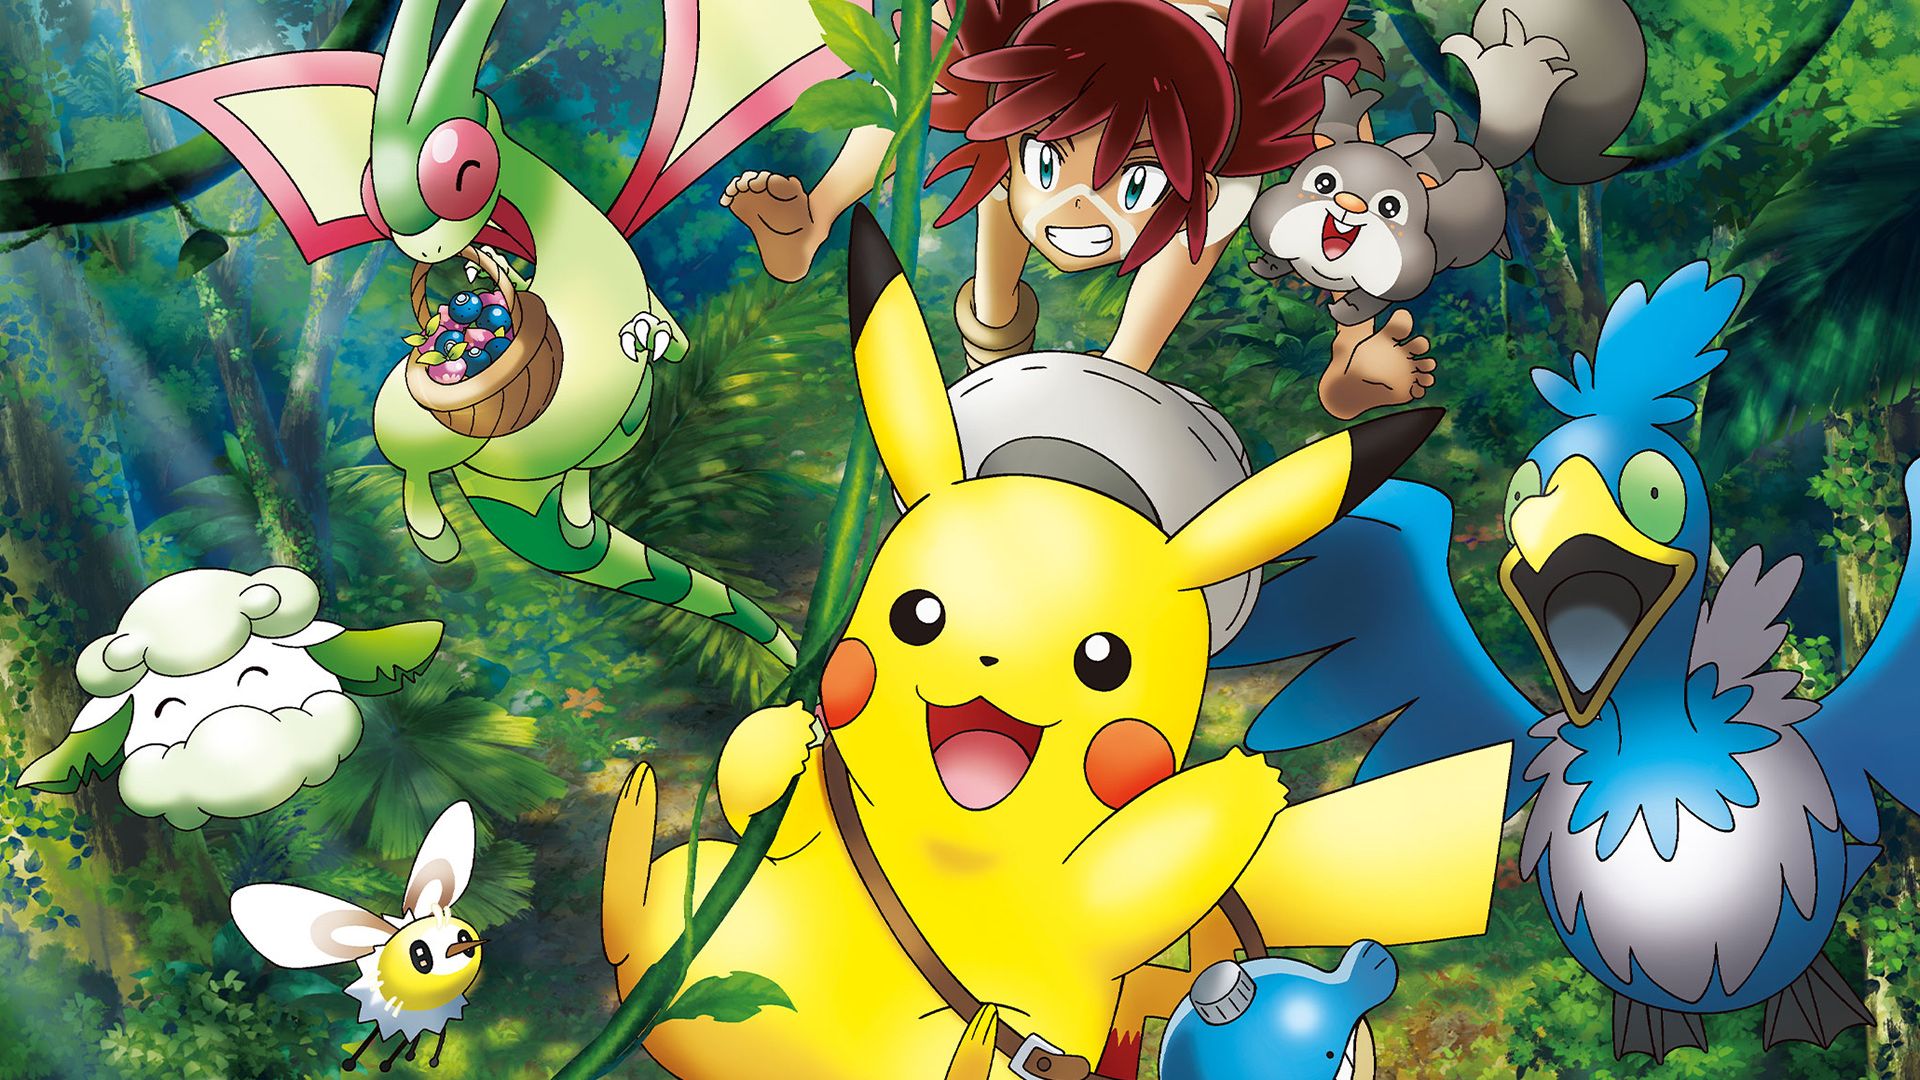 Pokémon the Movie: Secrets of the Jungle background